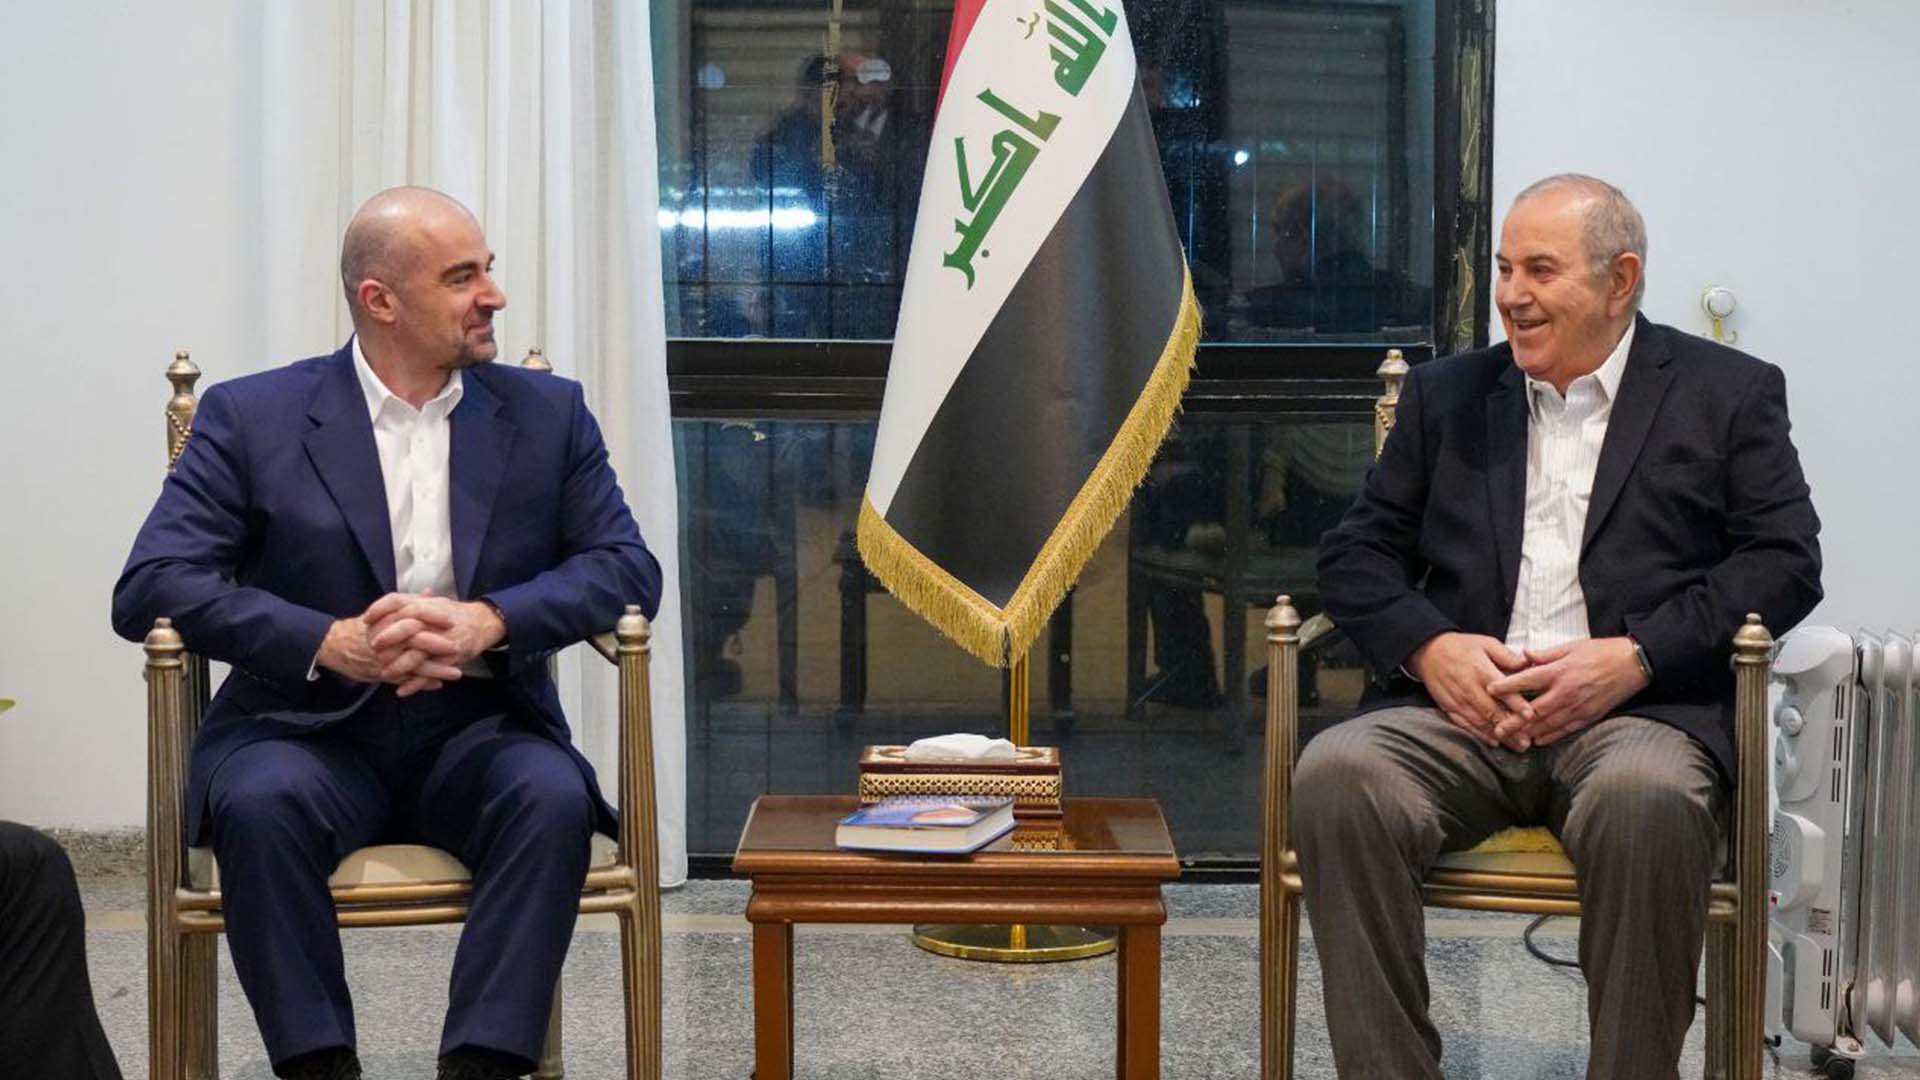  President Bafel Jalal Talabani meets with Ayad Allawi in Baghdad